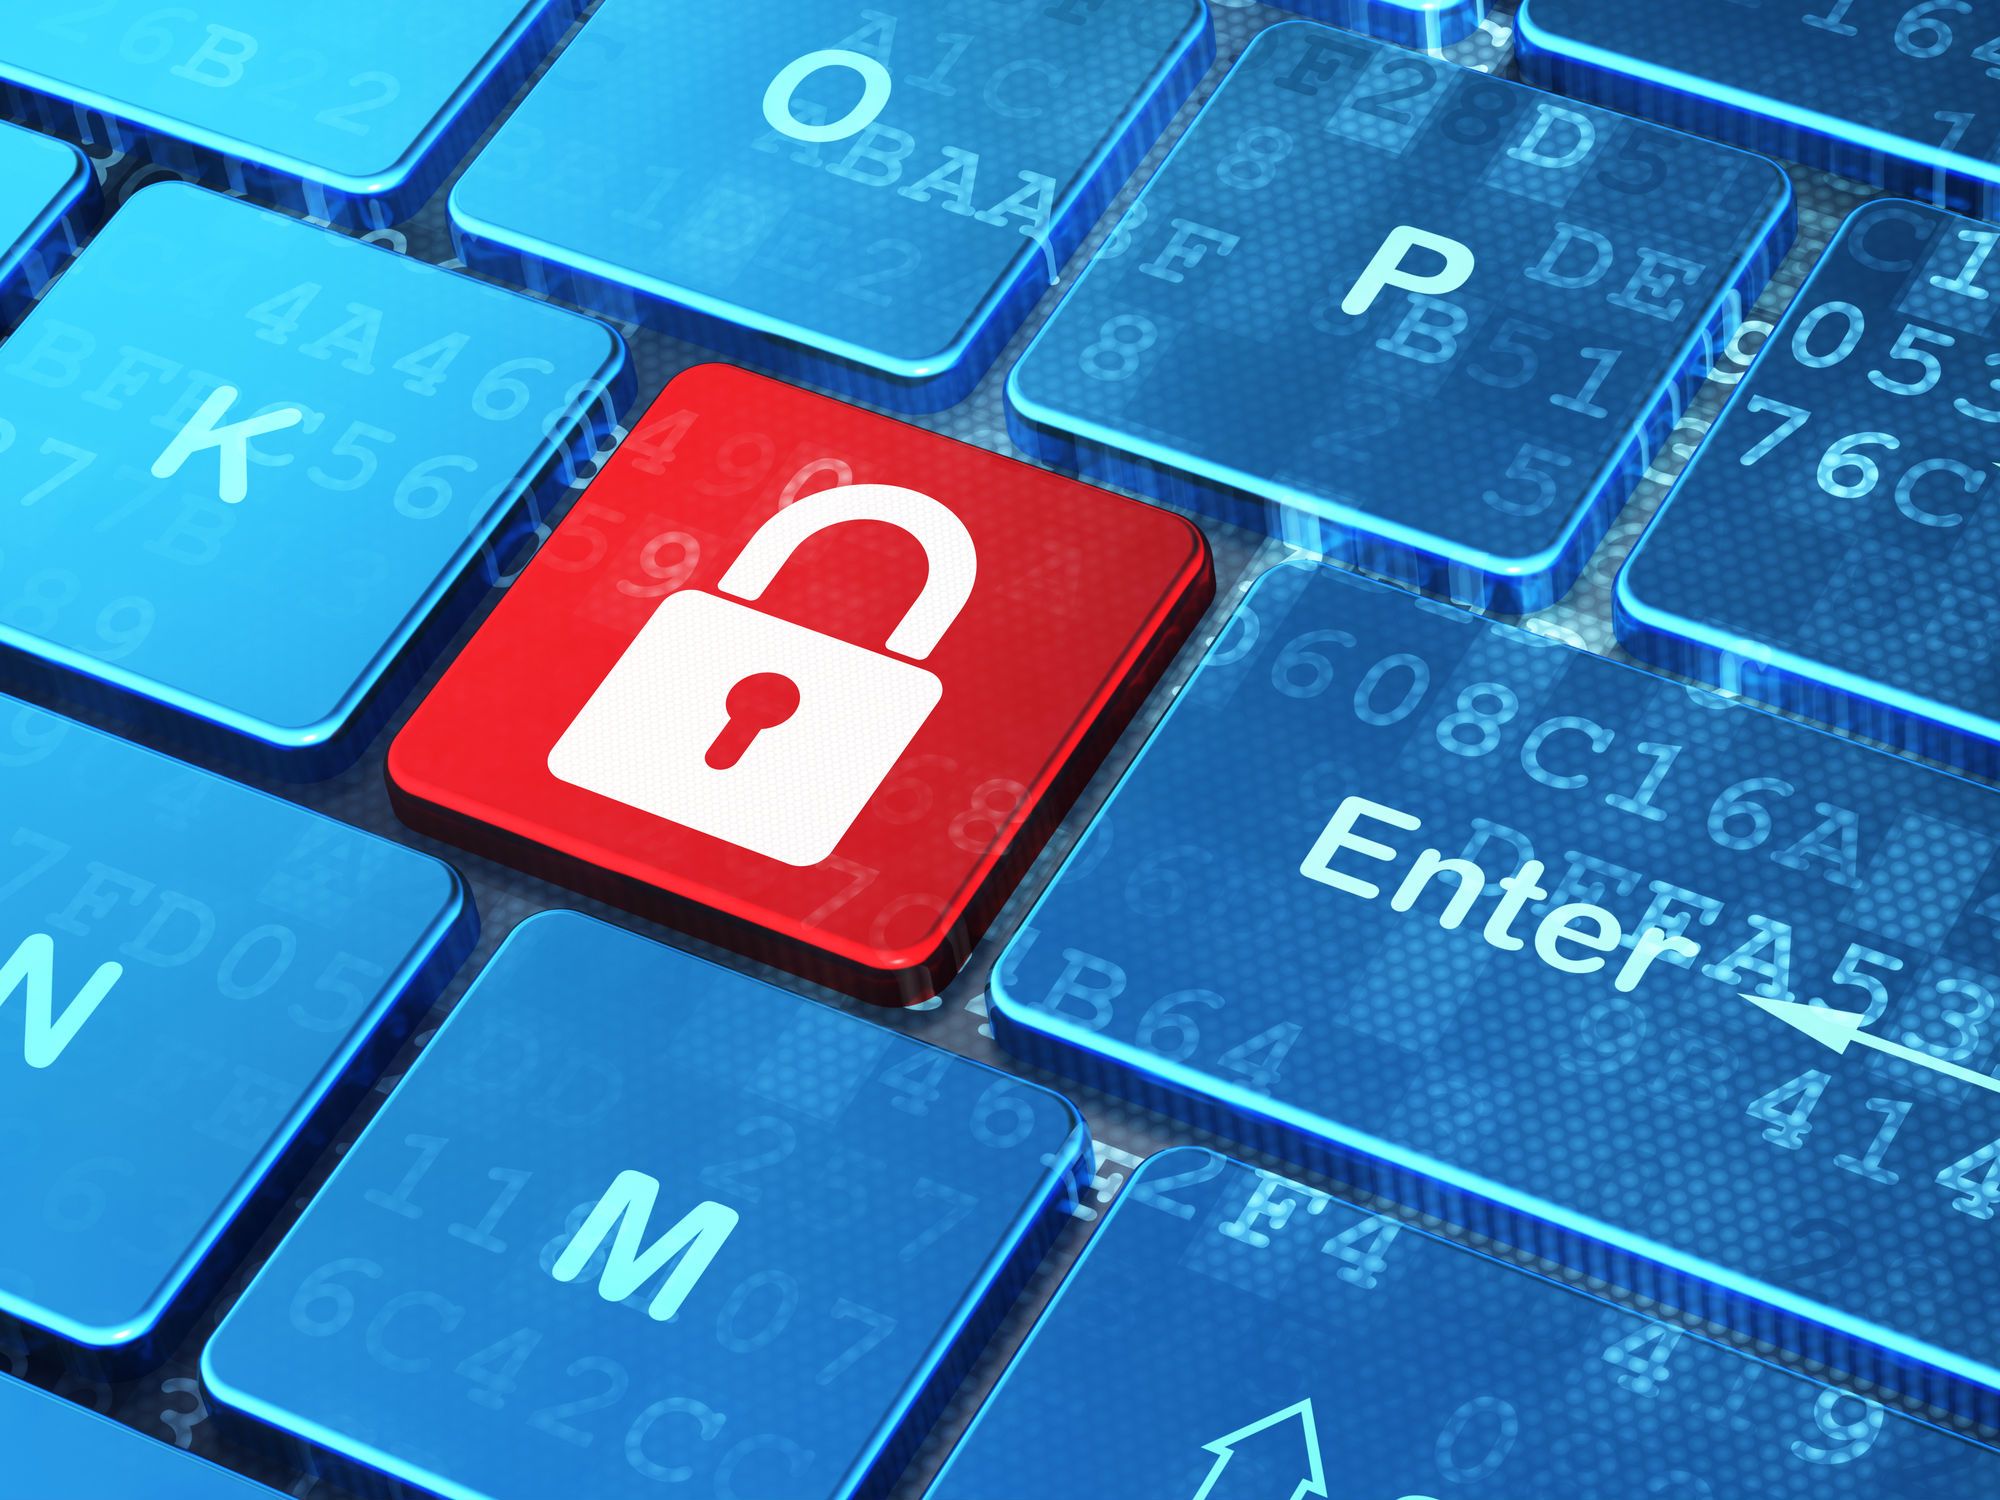 A keyboard with a red padlock key - wichita state university data breach